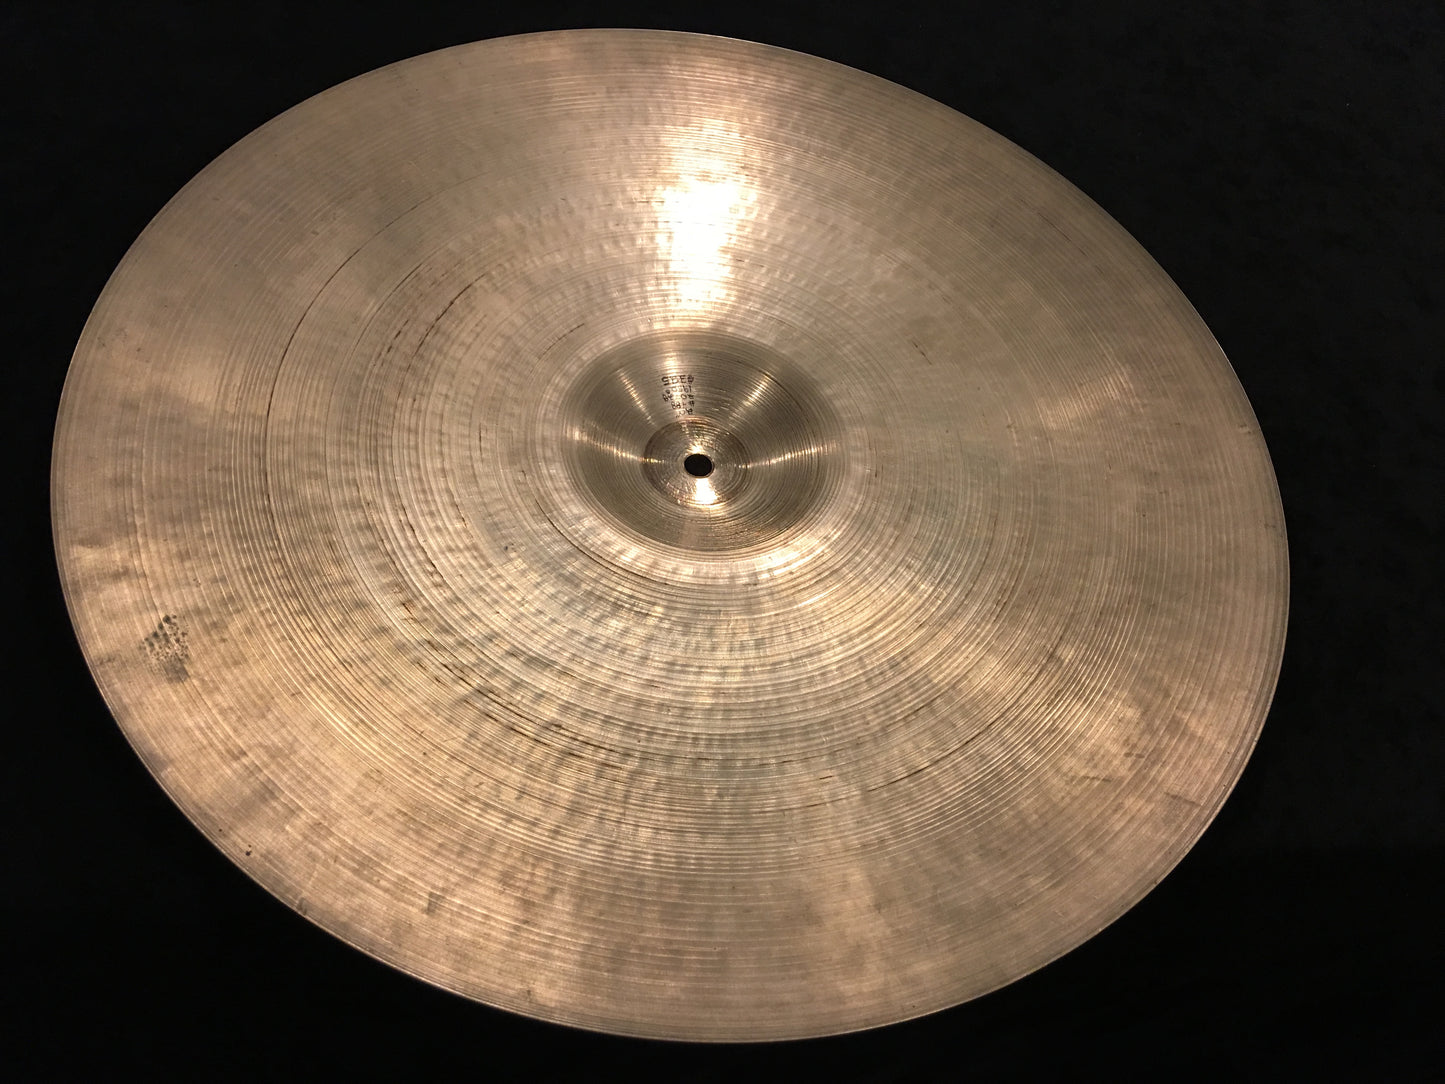 20" Zildjian A 1950s Ride Cymbal 2072g #488